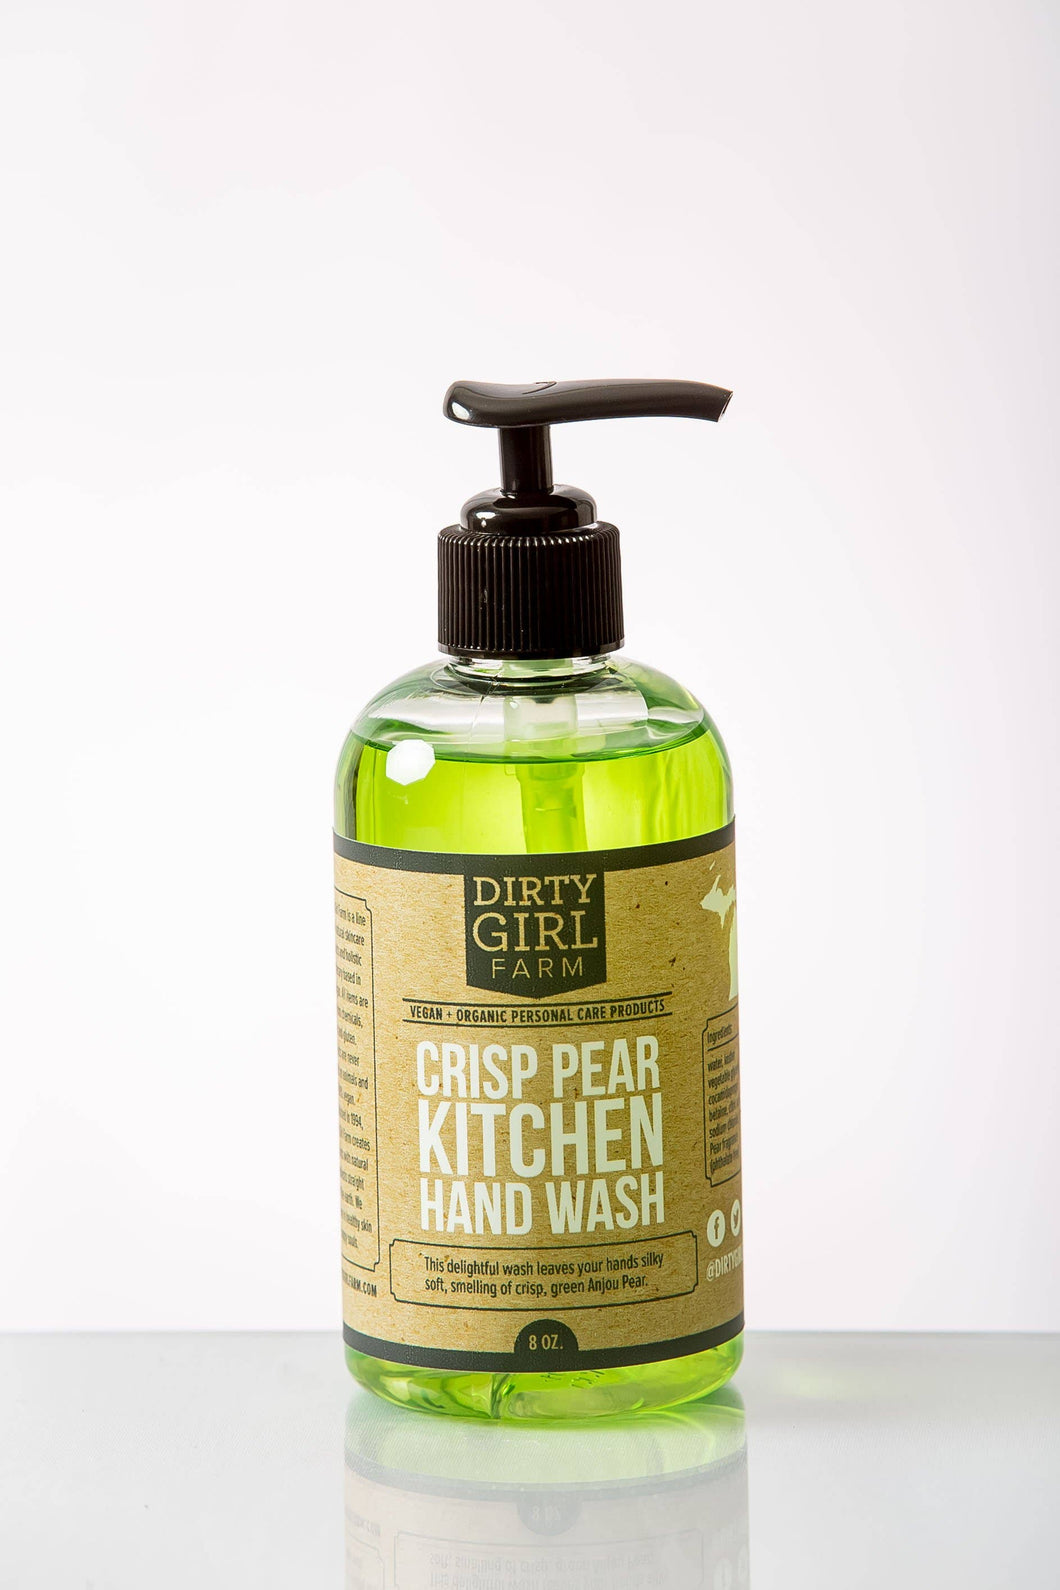 Crisp Pear Kitchen Hand Wash